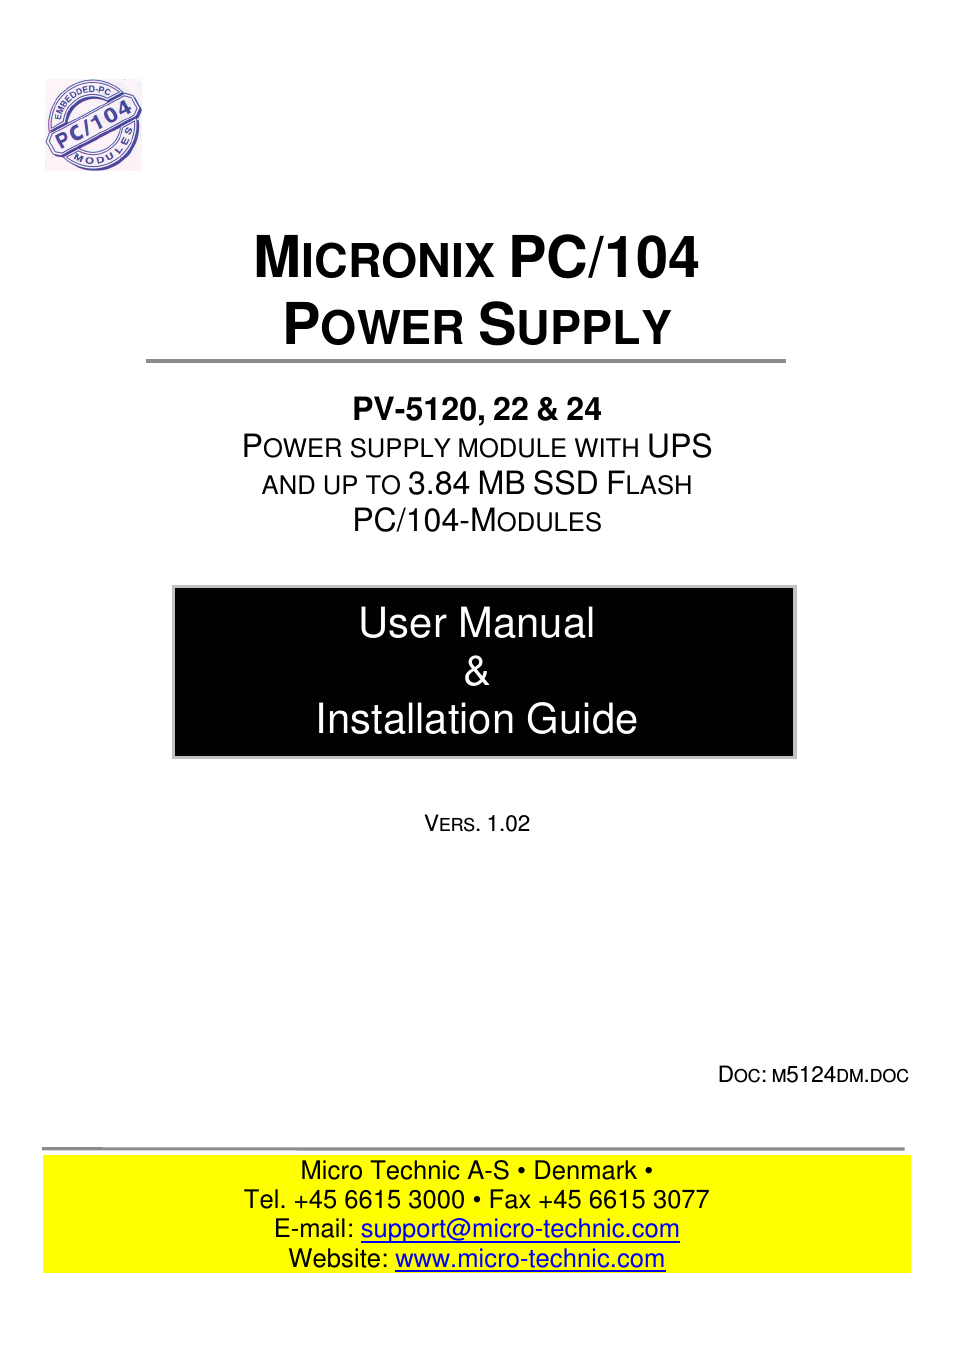 MICRONIX PC/104 PV-5122